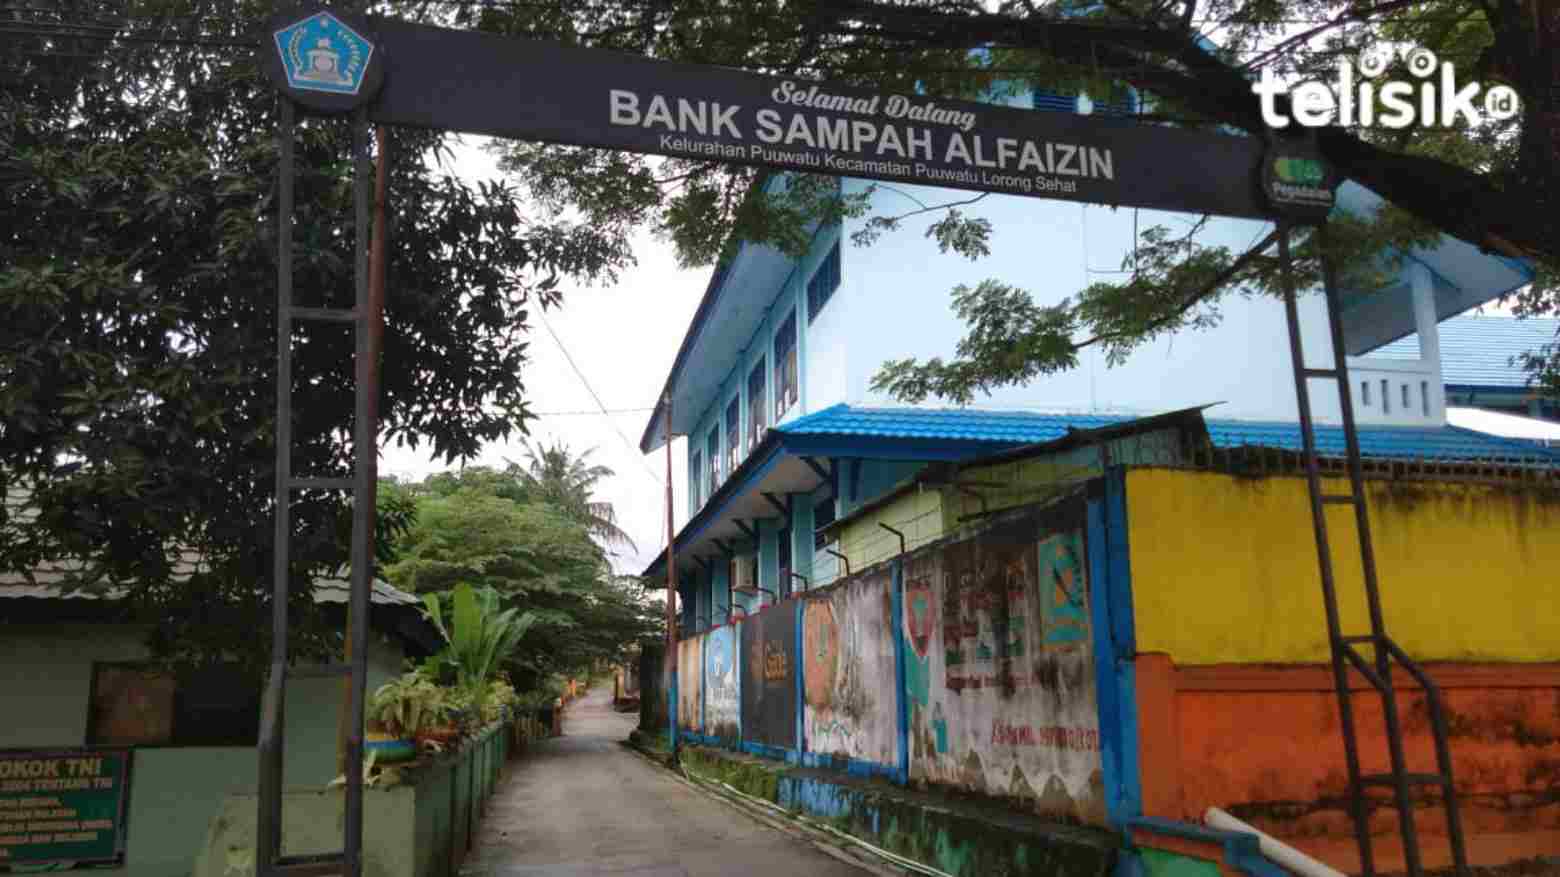 Bank Sampah Al Faizin Jadi Tempat Studi Banding Pengelolaan Lingkungan